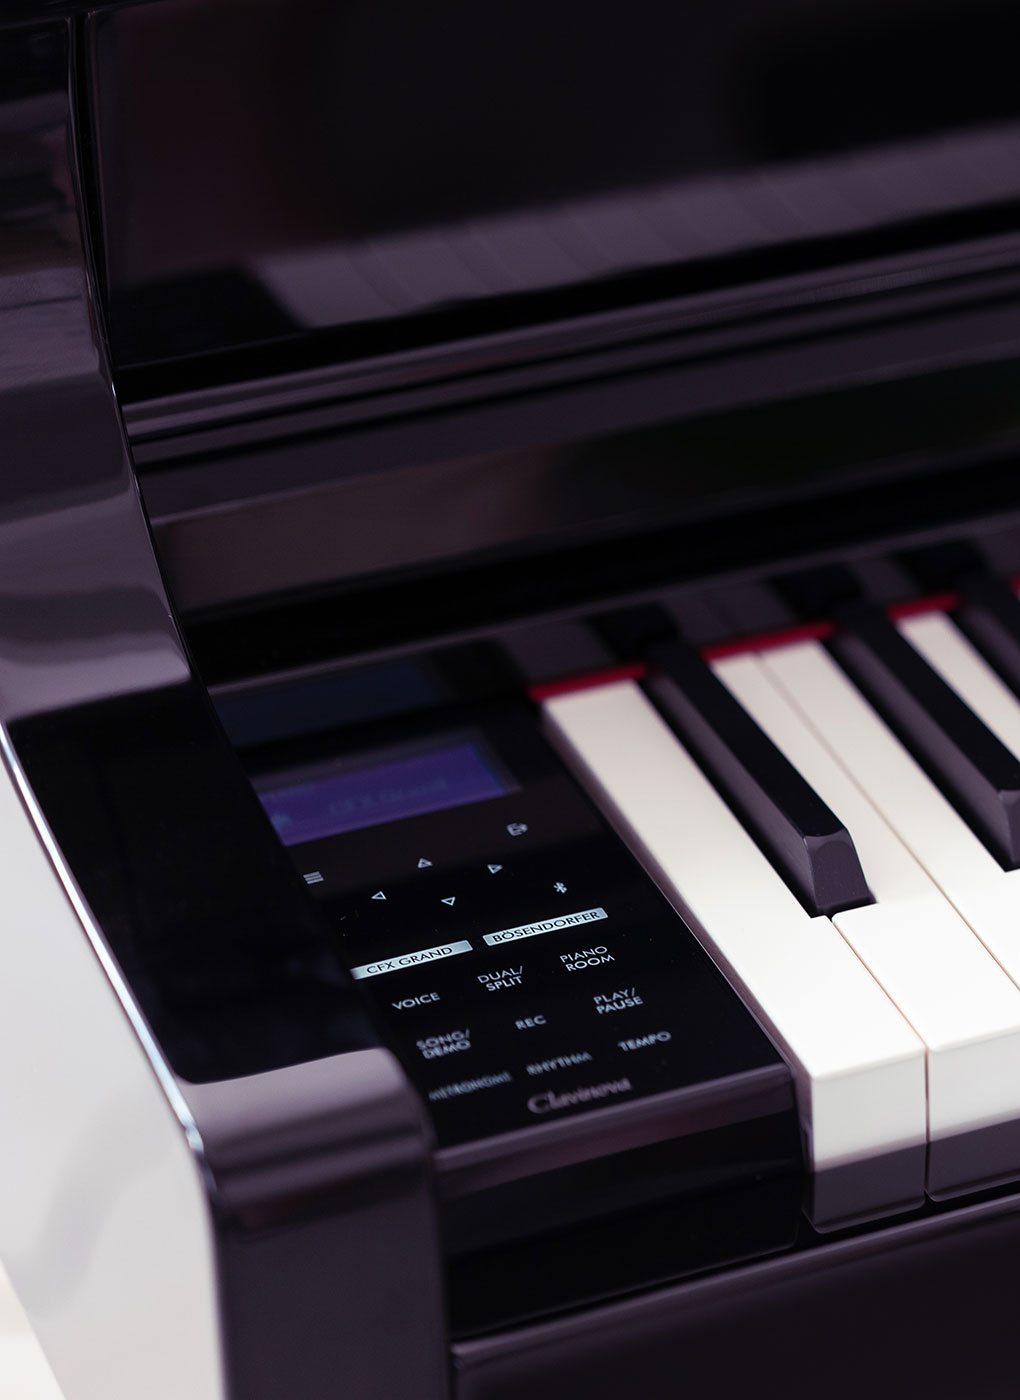 Close-up of controls for the Yamaha Clavinova piano